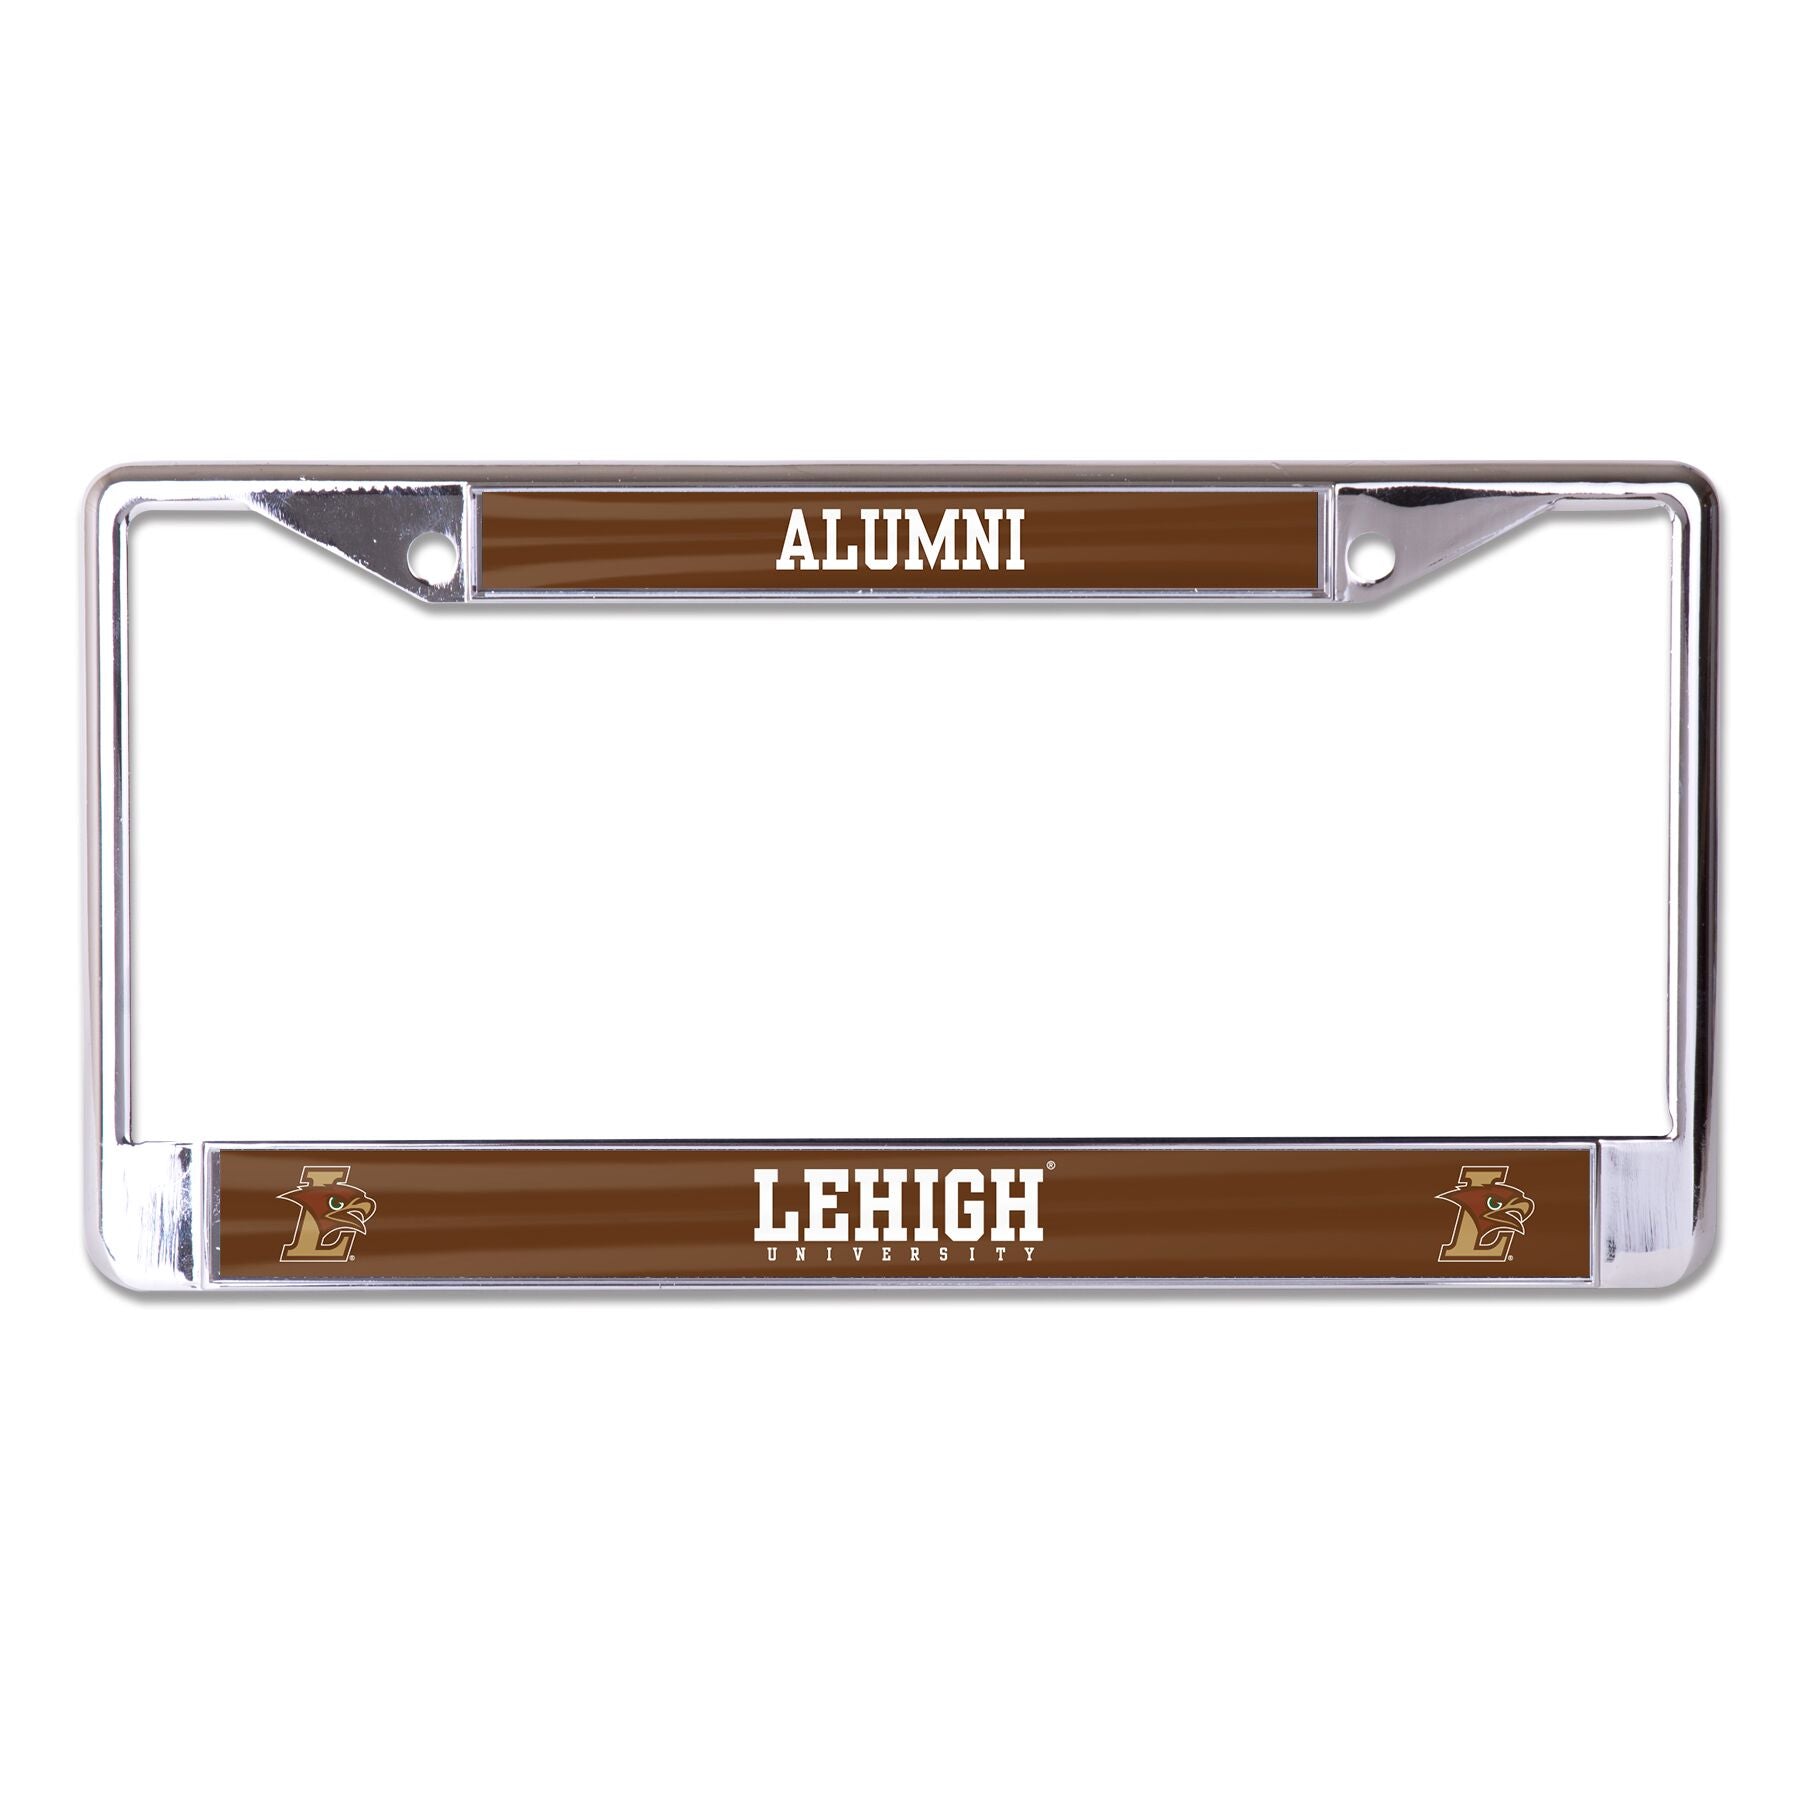 Lehigh University Alumni Chrome License Plate Frame